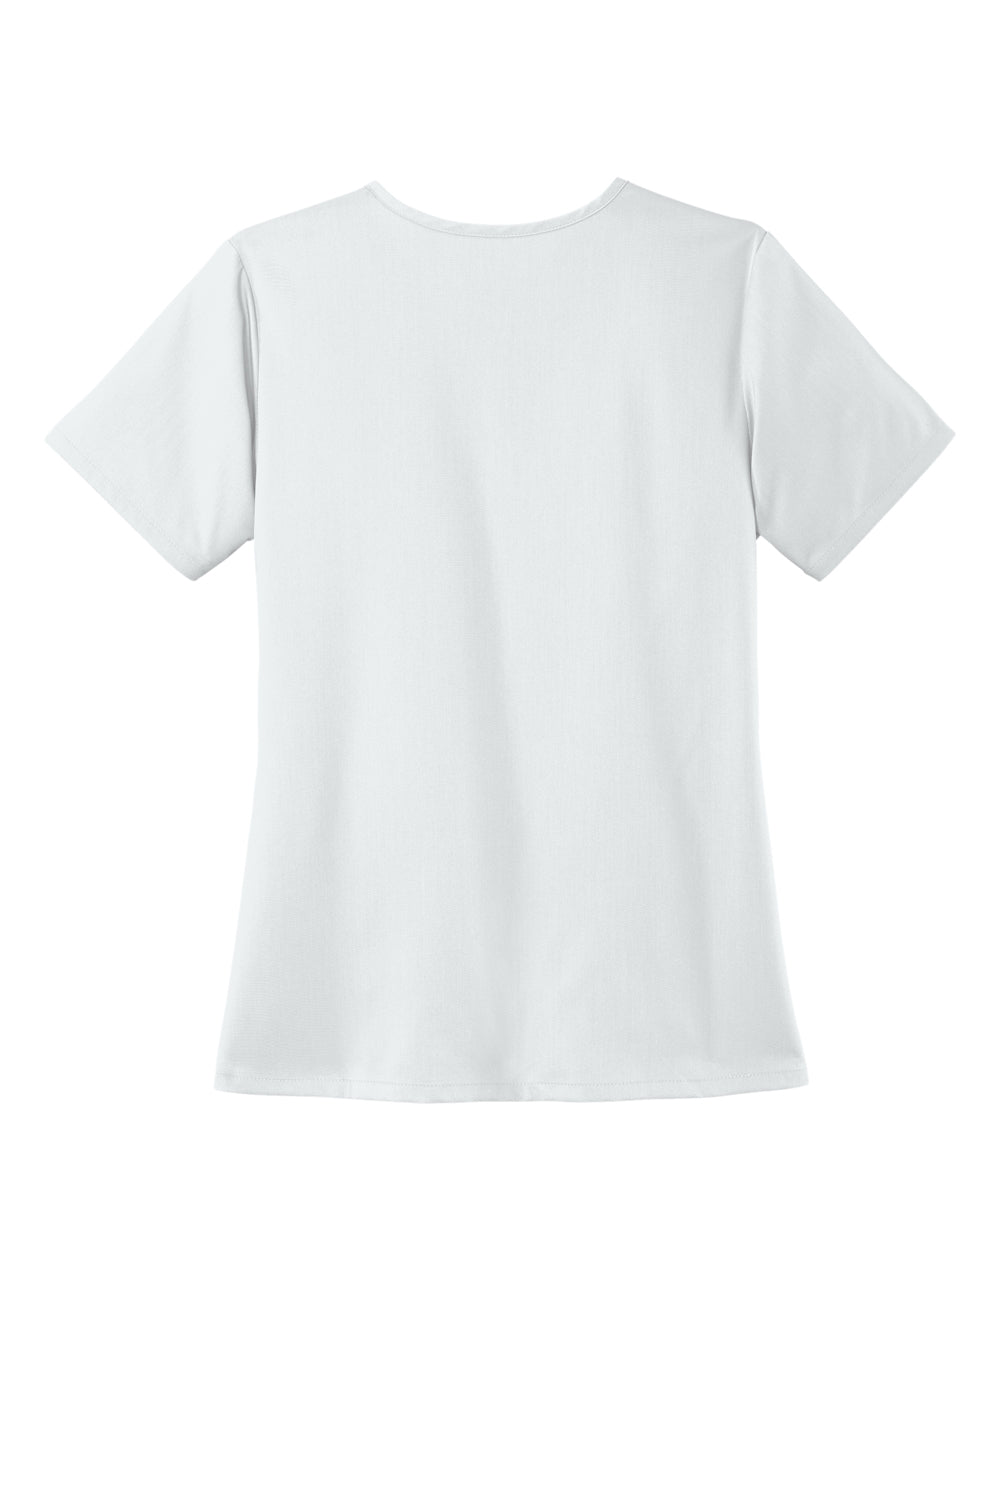 Wonderwink WW4168 Premiere Flex Short Sleeve V-Neck Shirt w/ Pockets White Flat Back